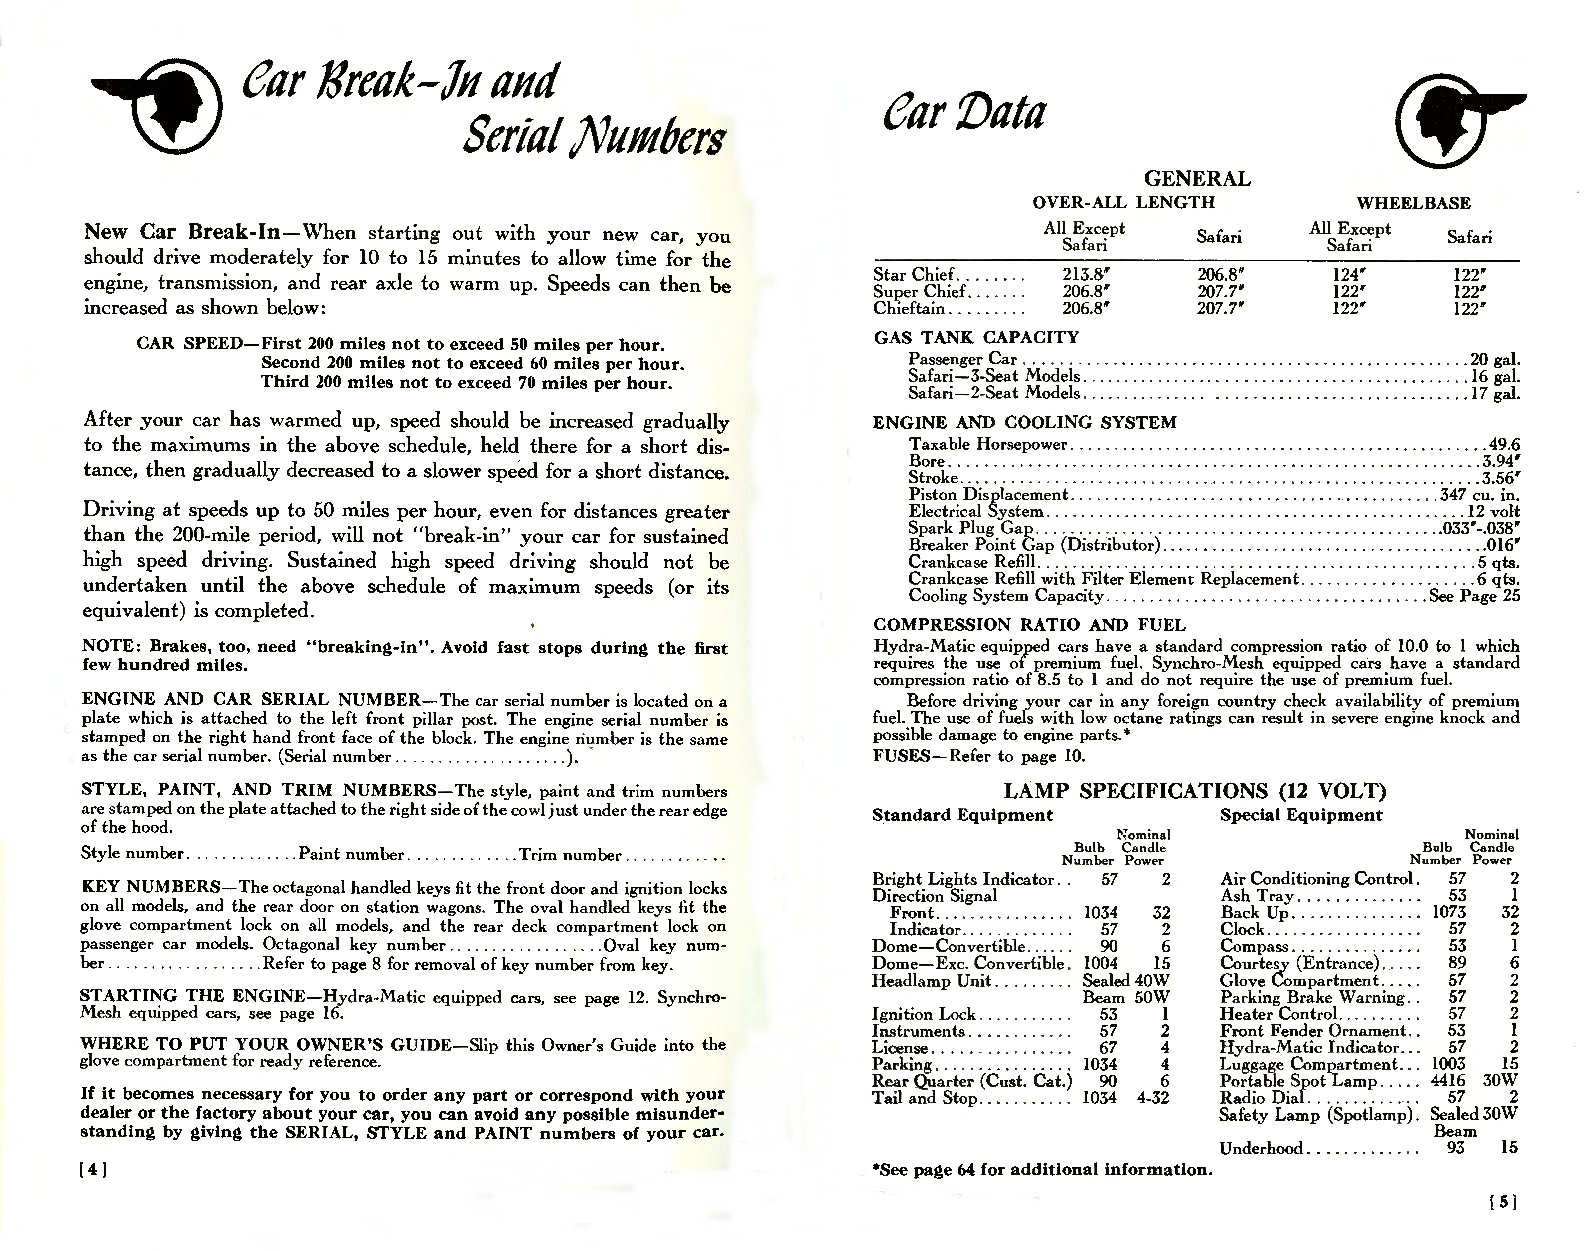 n_1957 Pontiac Owners Guide-04-05.jpg